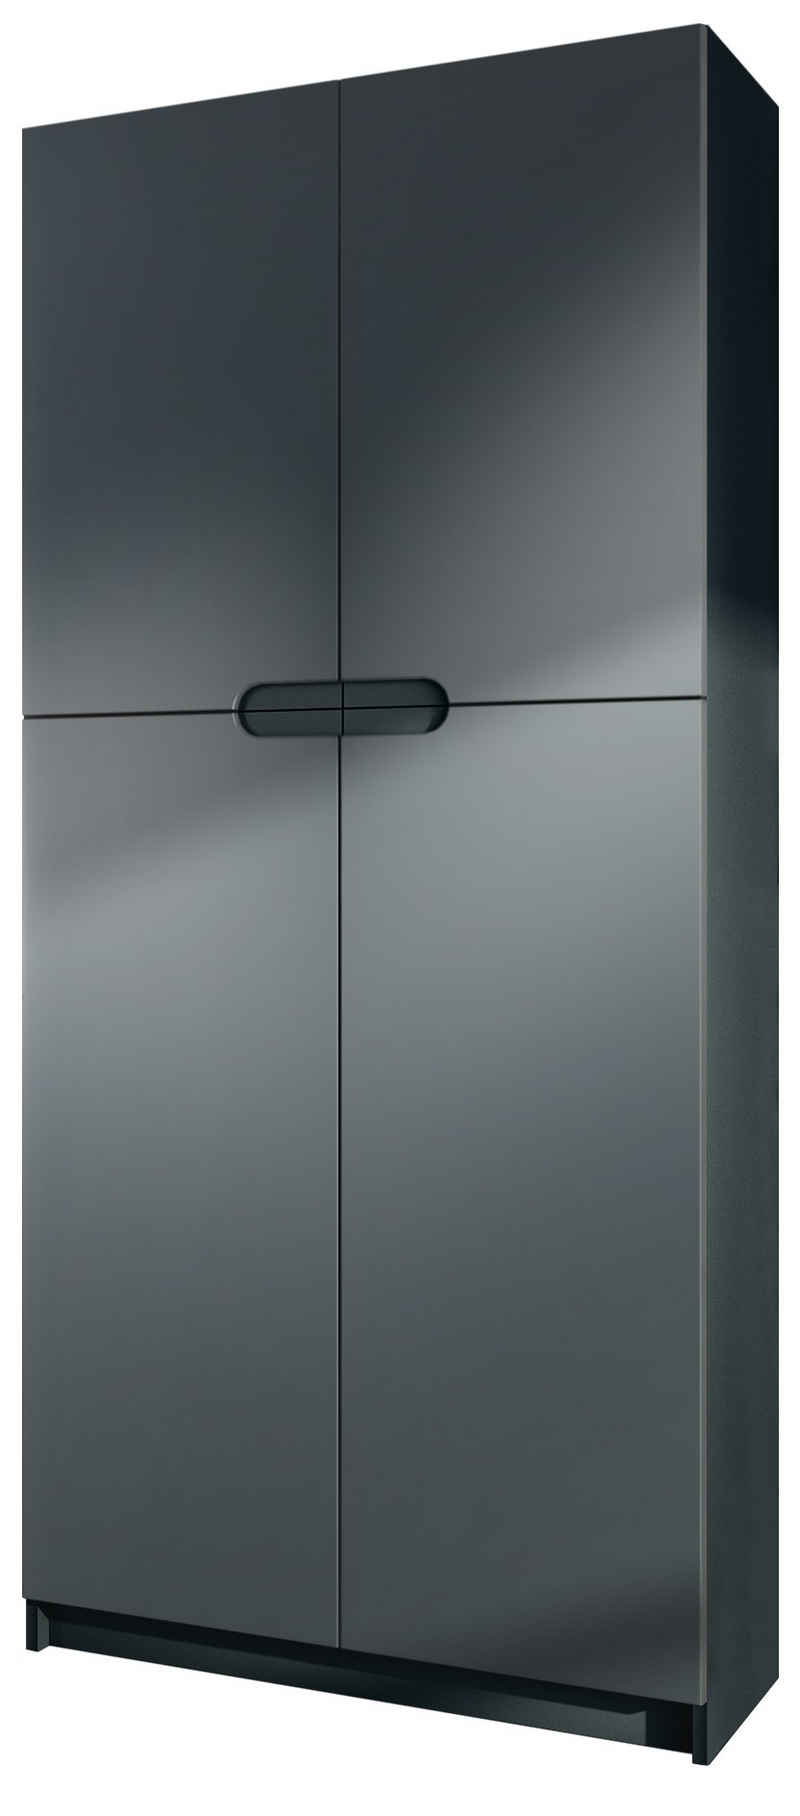 Vladon Aktenschrank »Logan« Aktenschrank mit 5 Fächern und 4 Türen, Schwarz matt/Graphit Seidenmatt (82 x 185 x 37 cm)